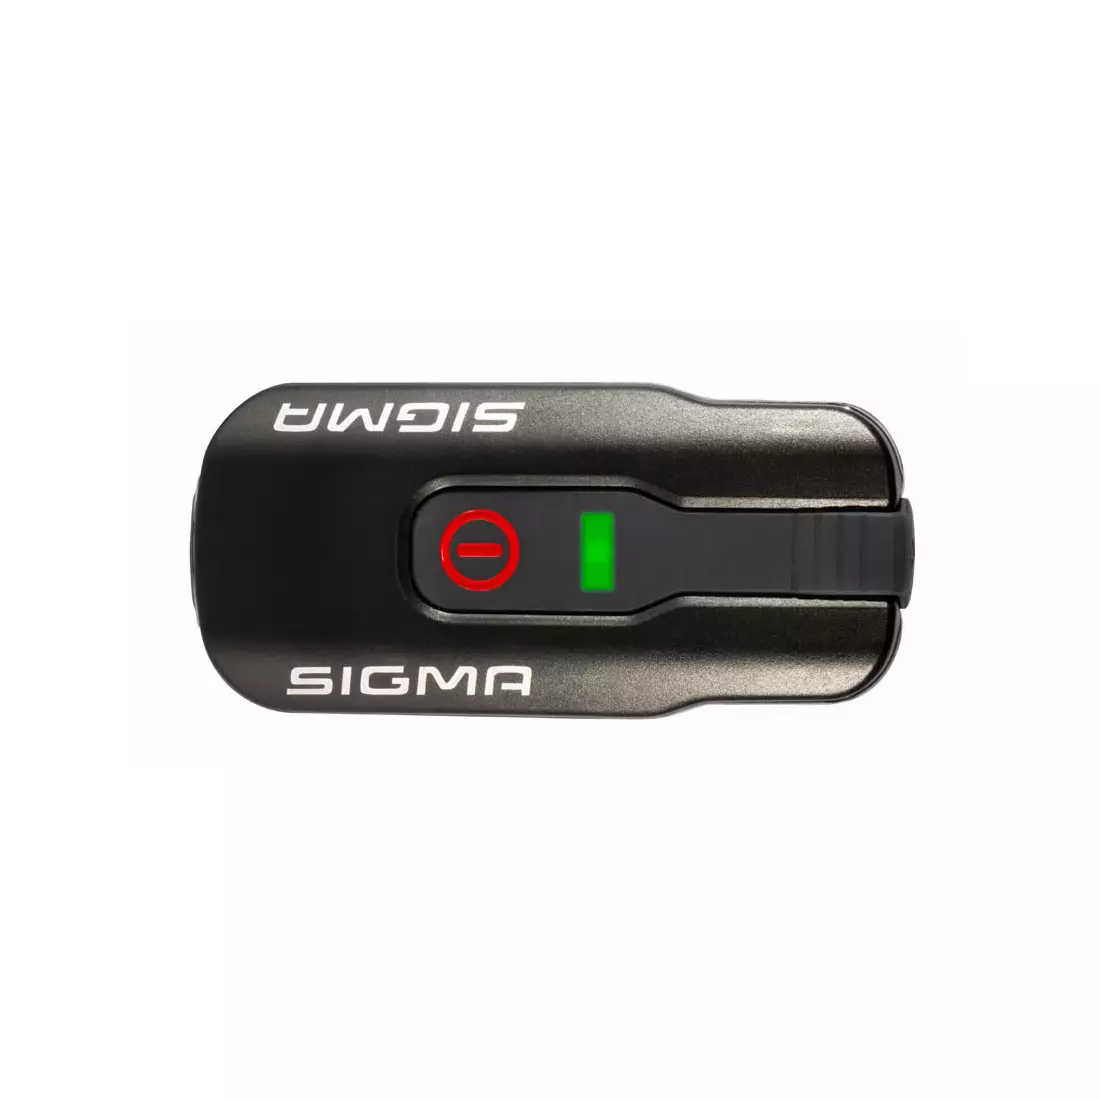 Sigma kerékpár lámpák készlete elöl + hátul AURA 60 USB + INFINITY 17760